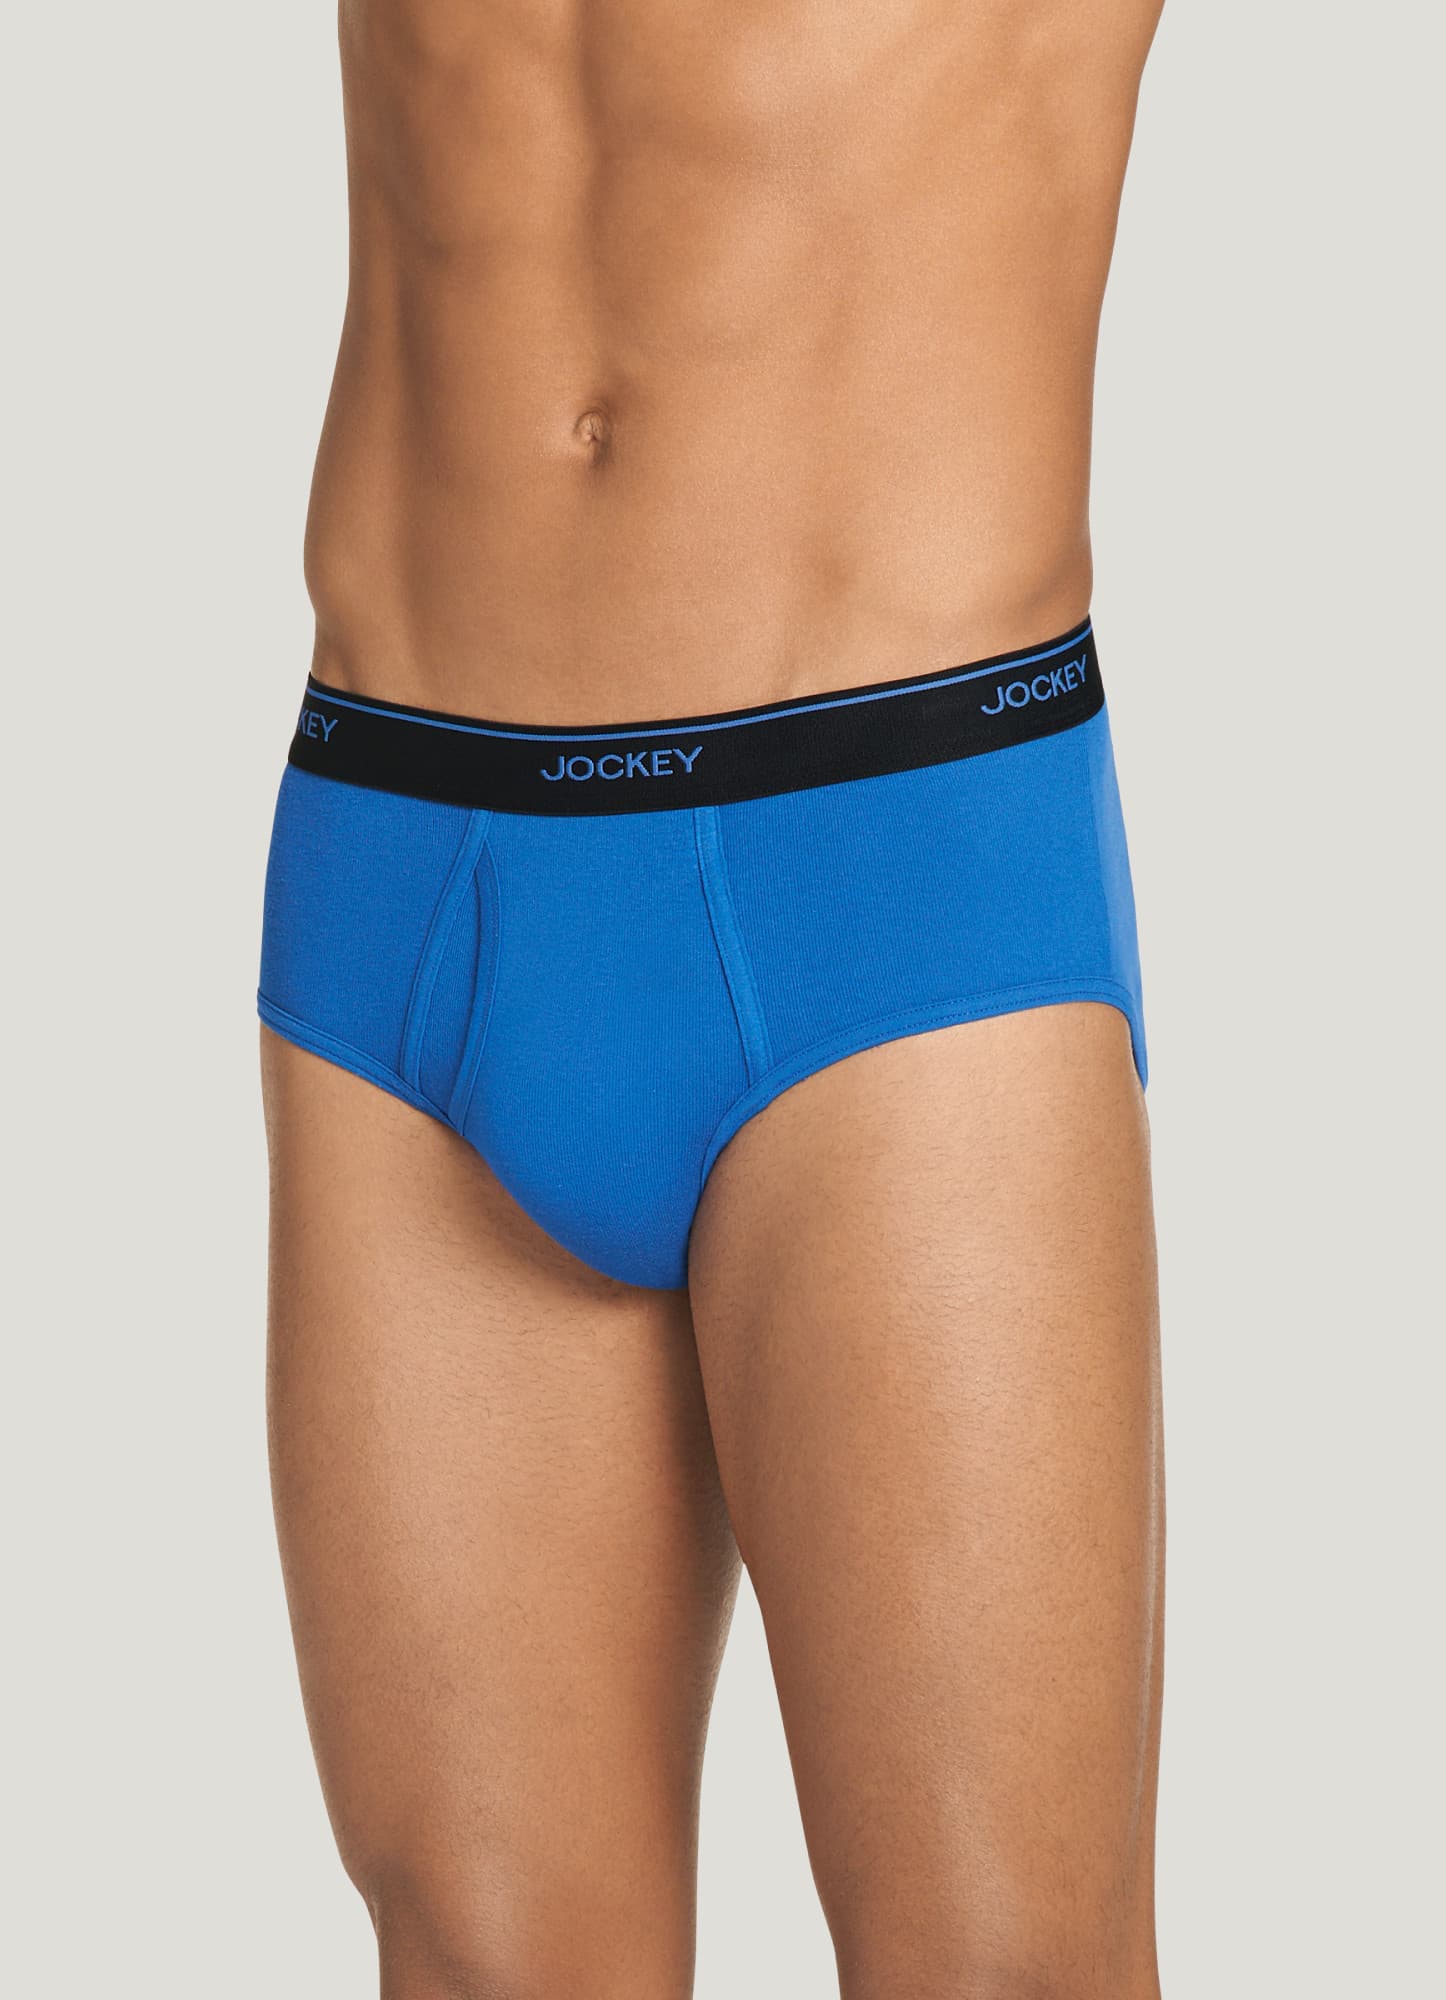 Jockey Official Site  Underwear, Activewear & Sleepwear